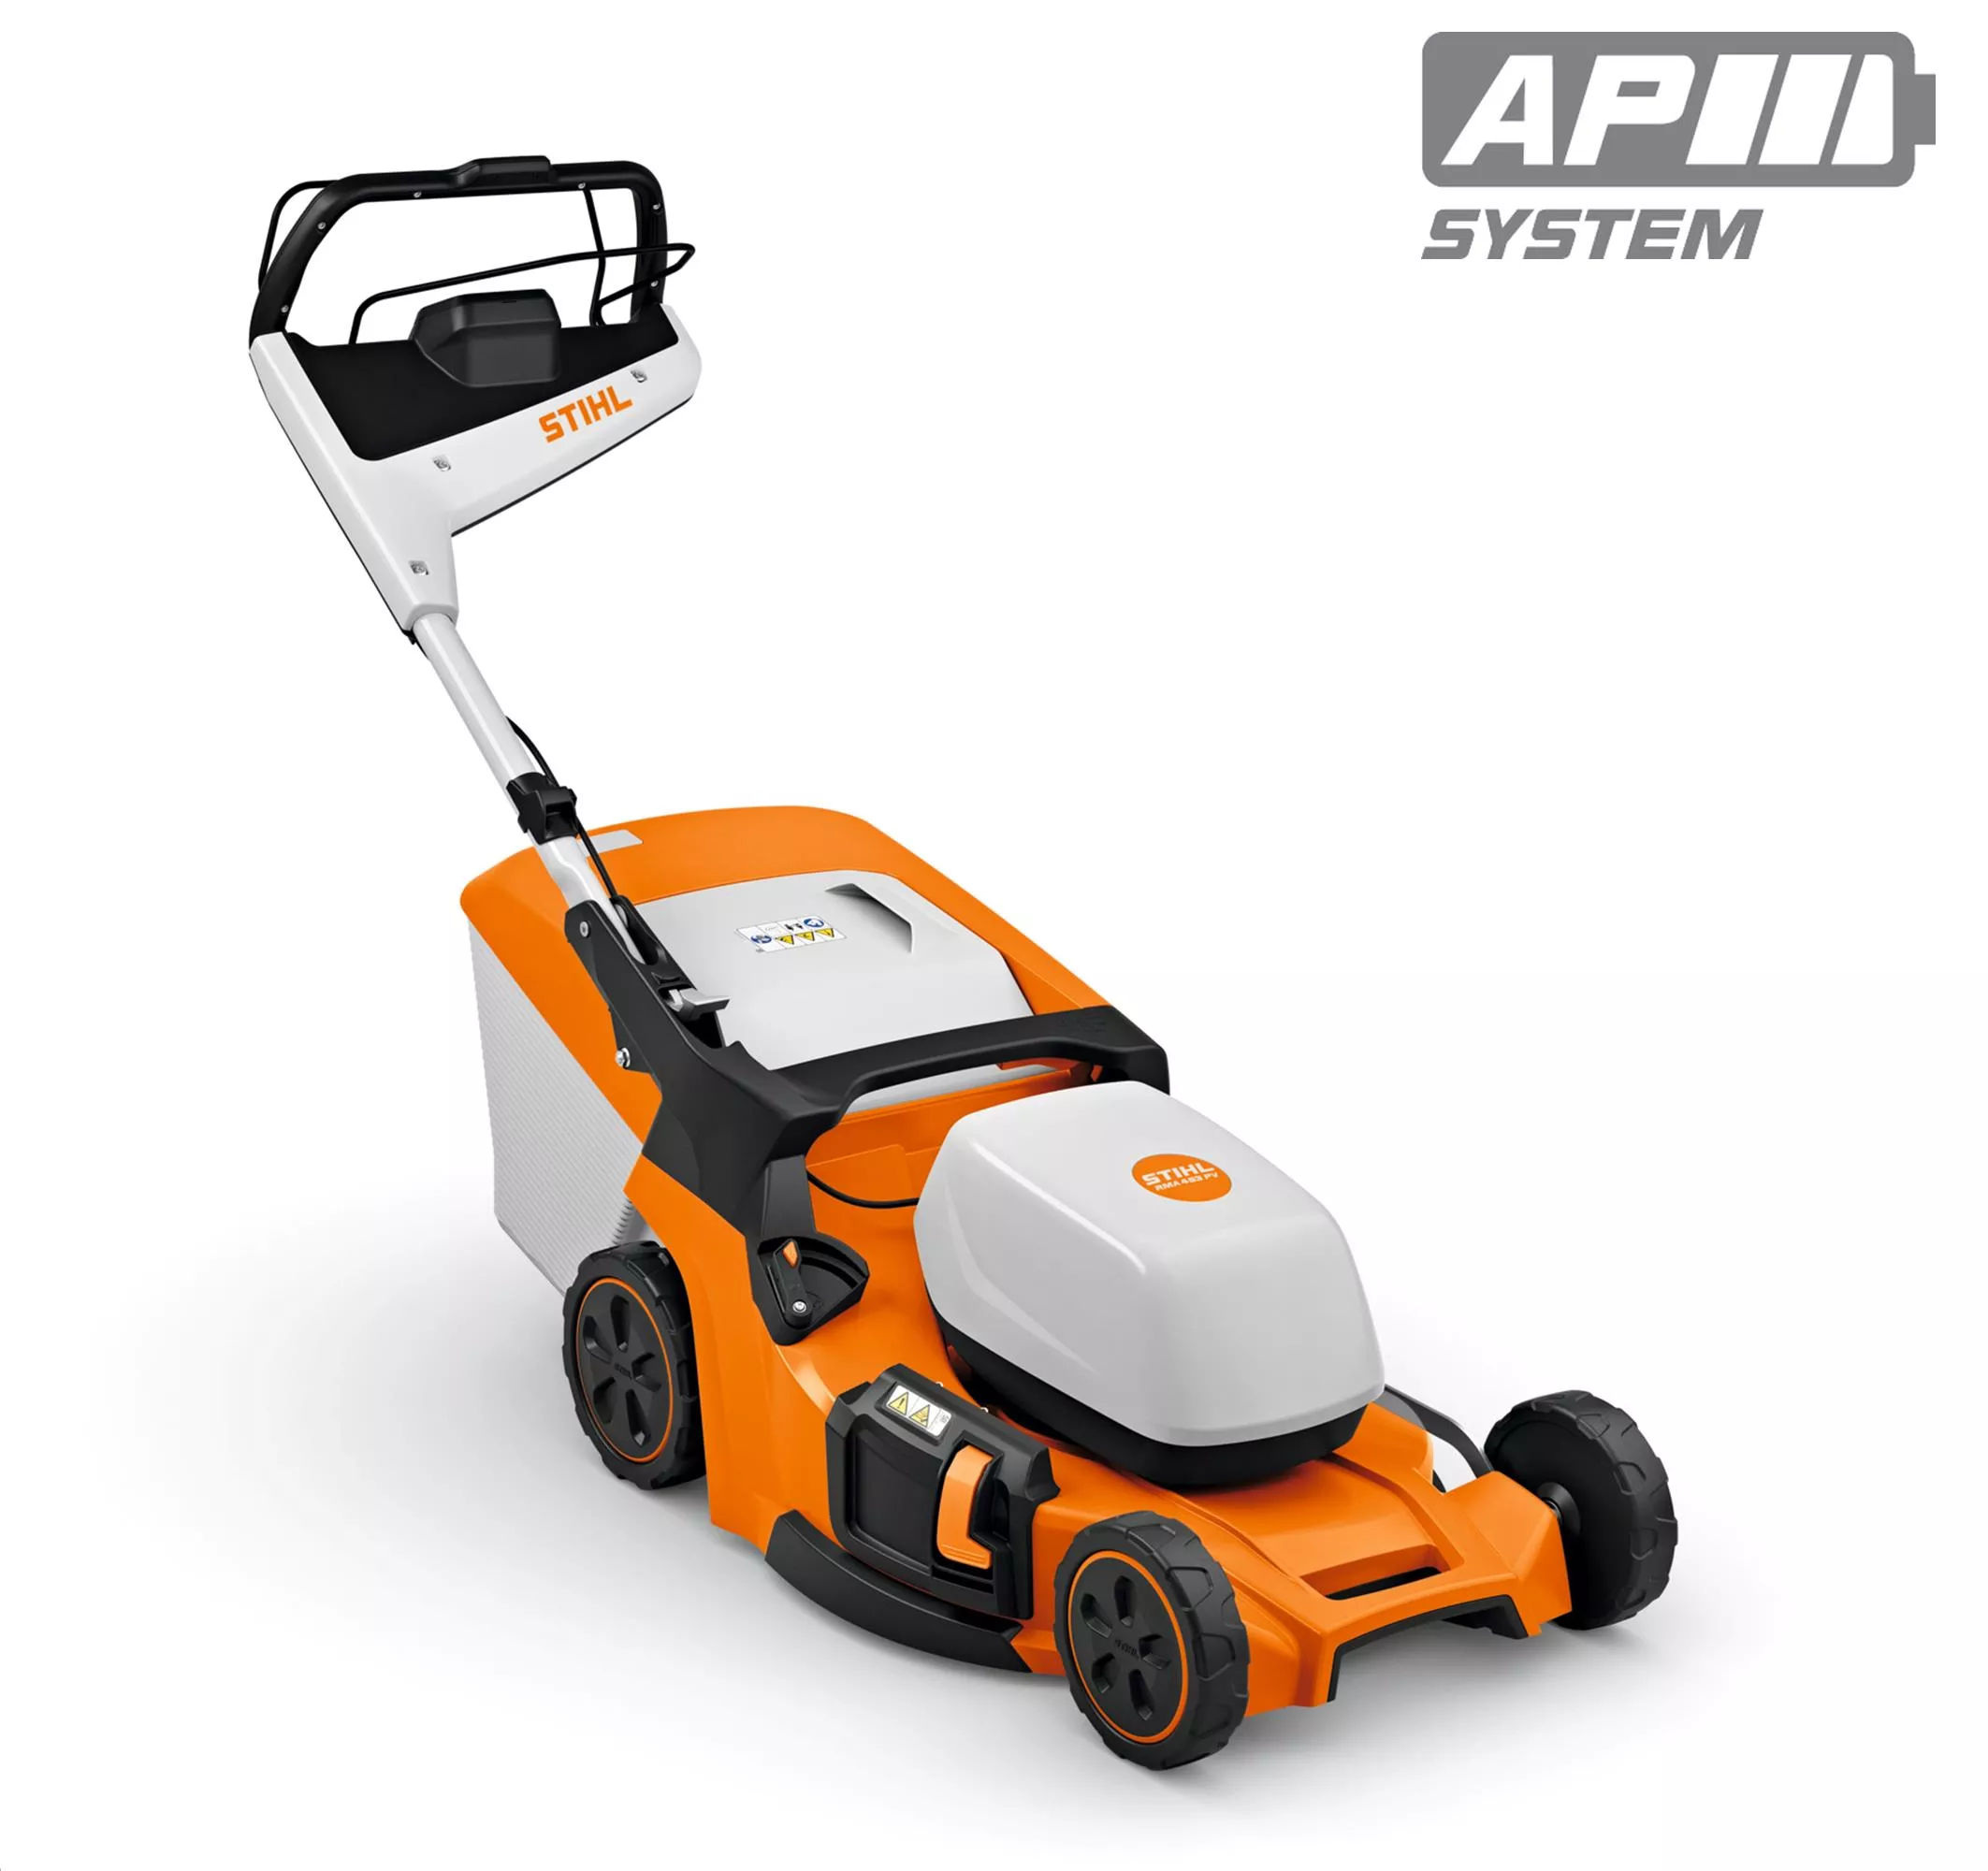 RMA 453 PV Cordless Lawn Mower - AP